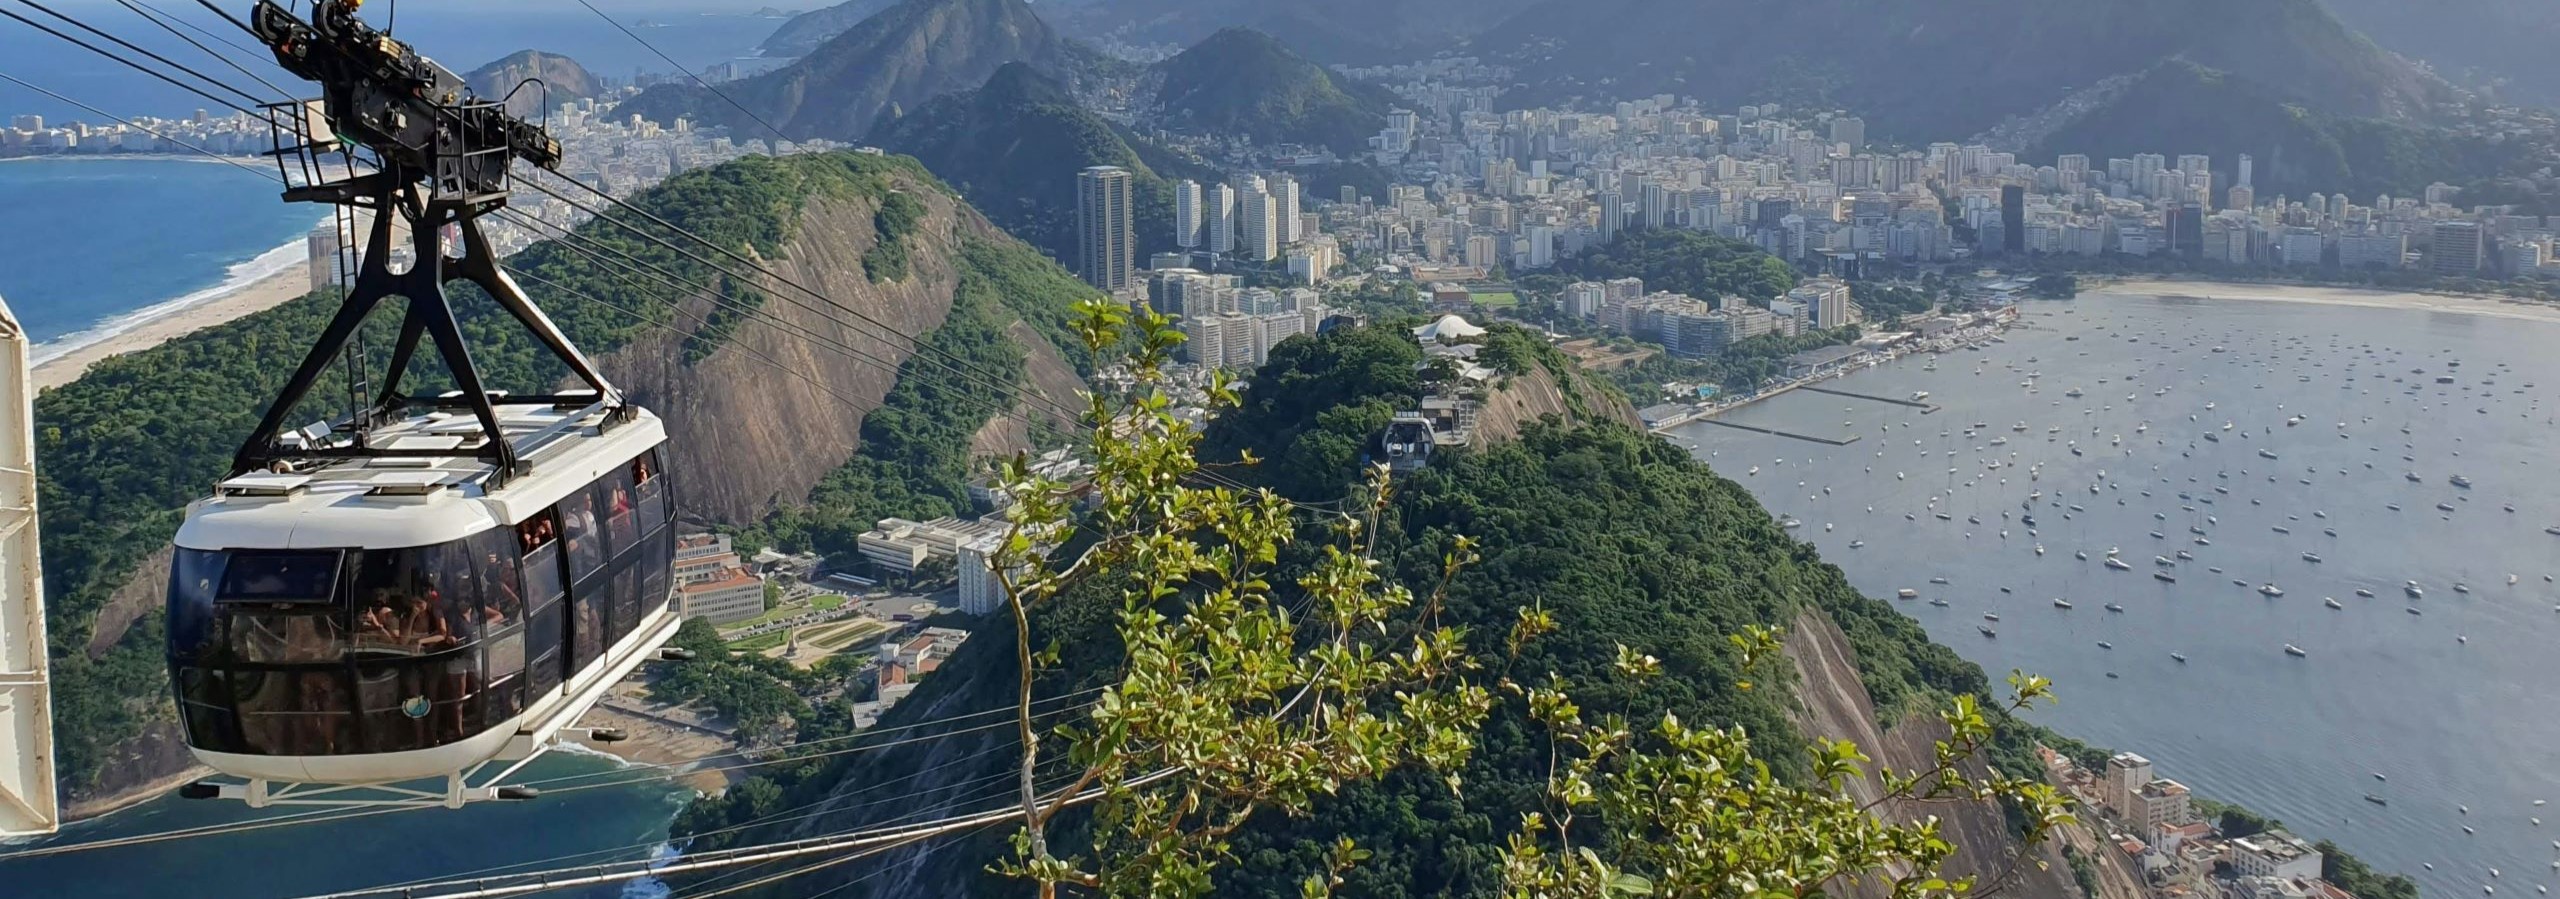 brazil city scaled 1